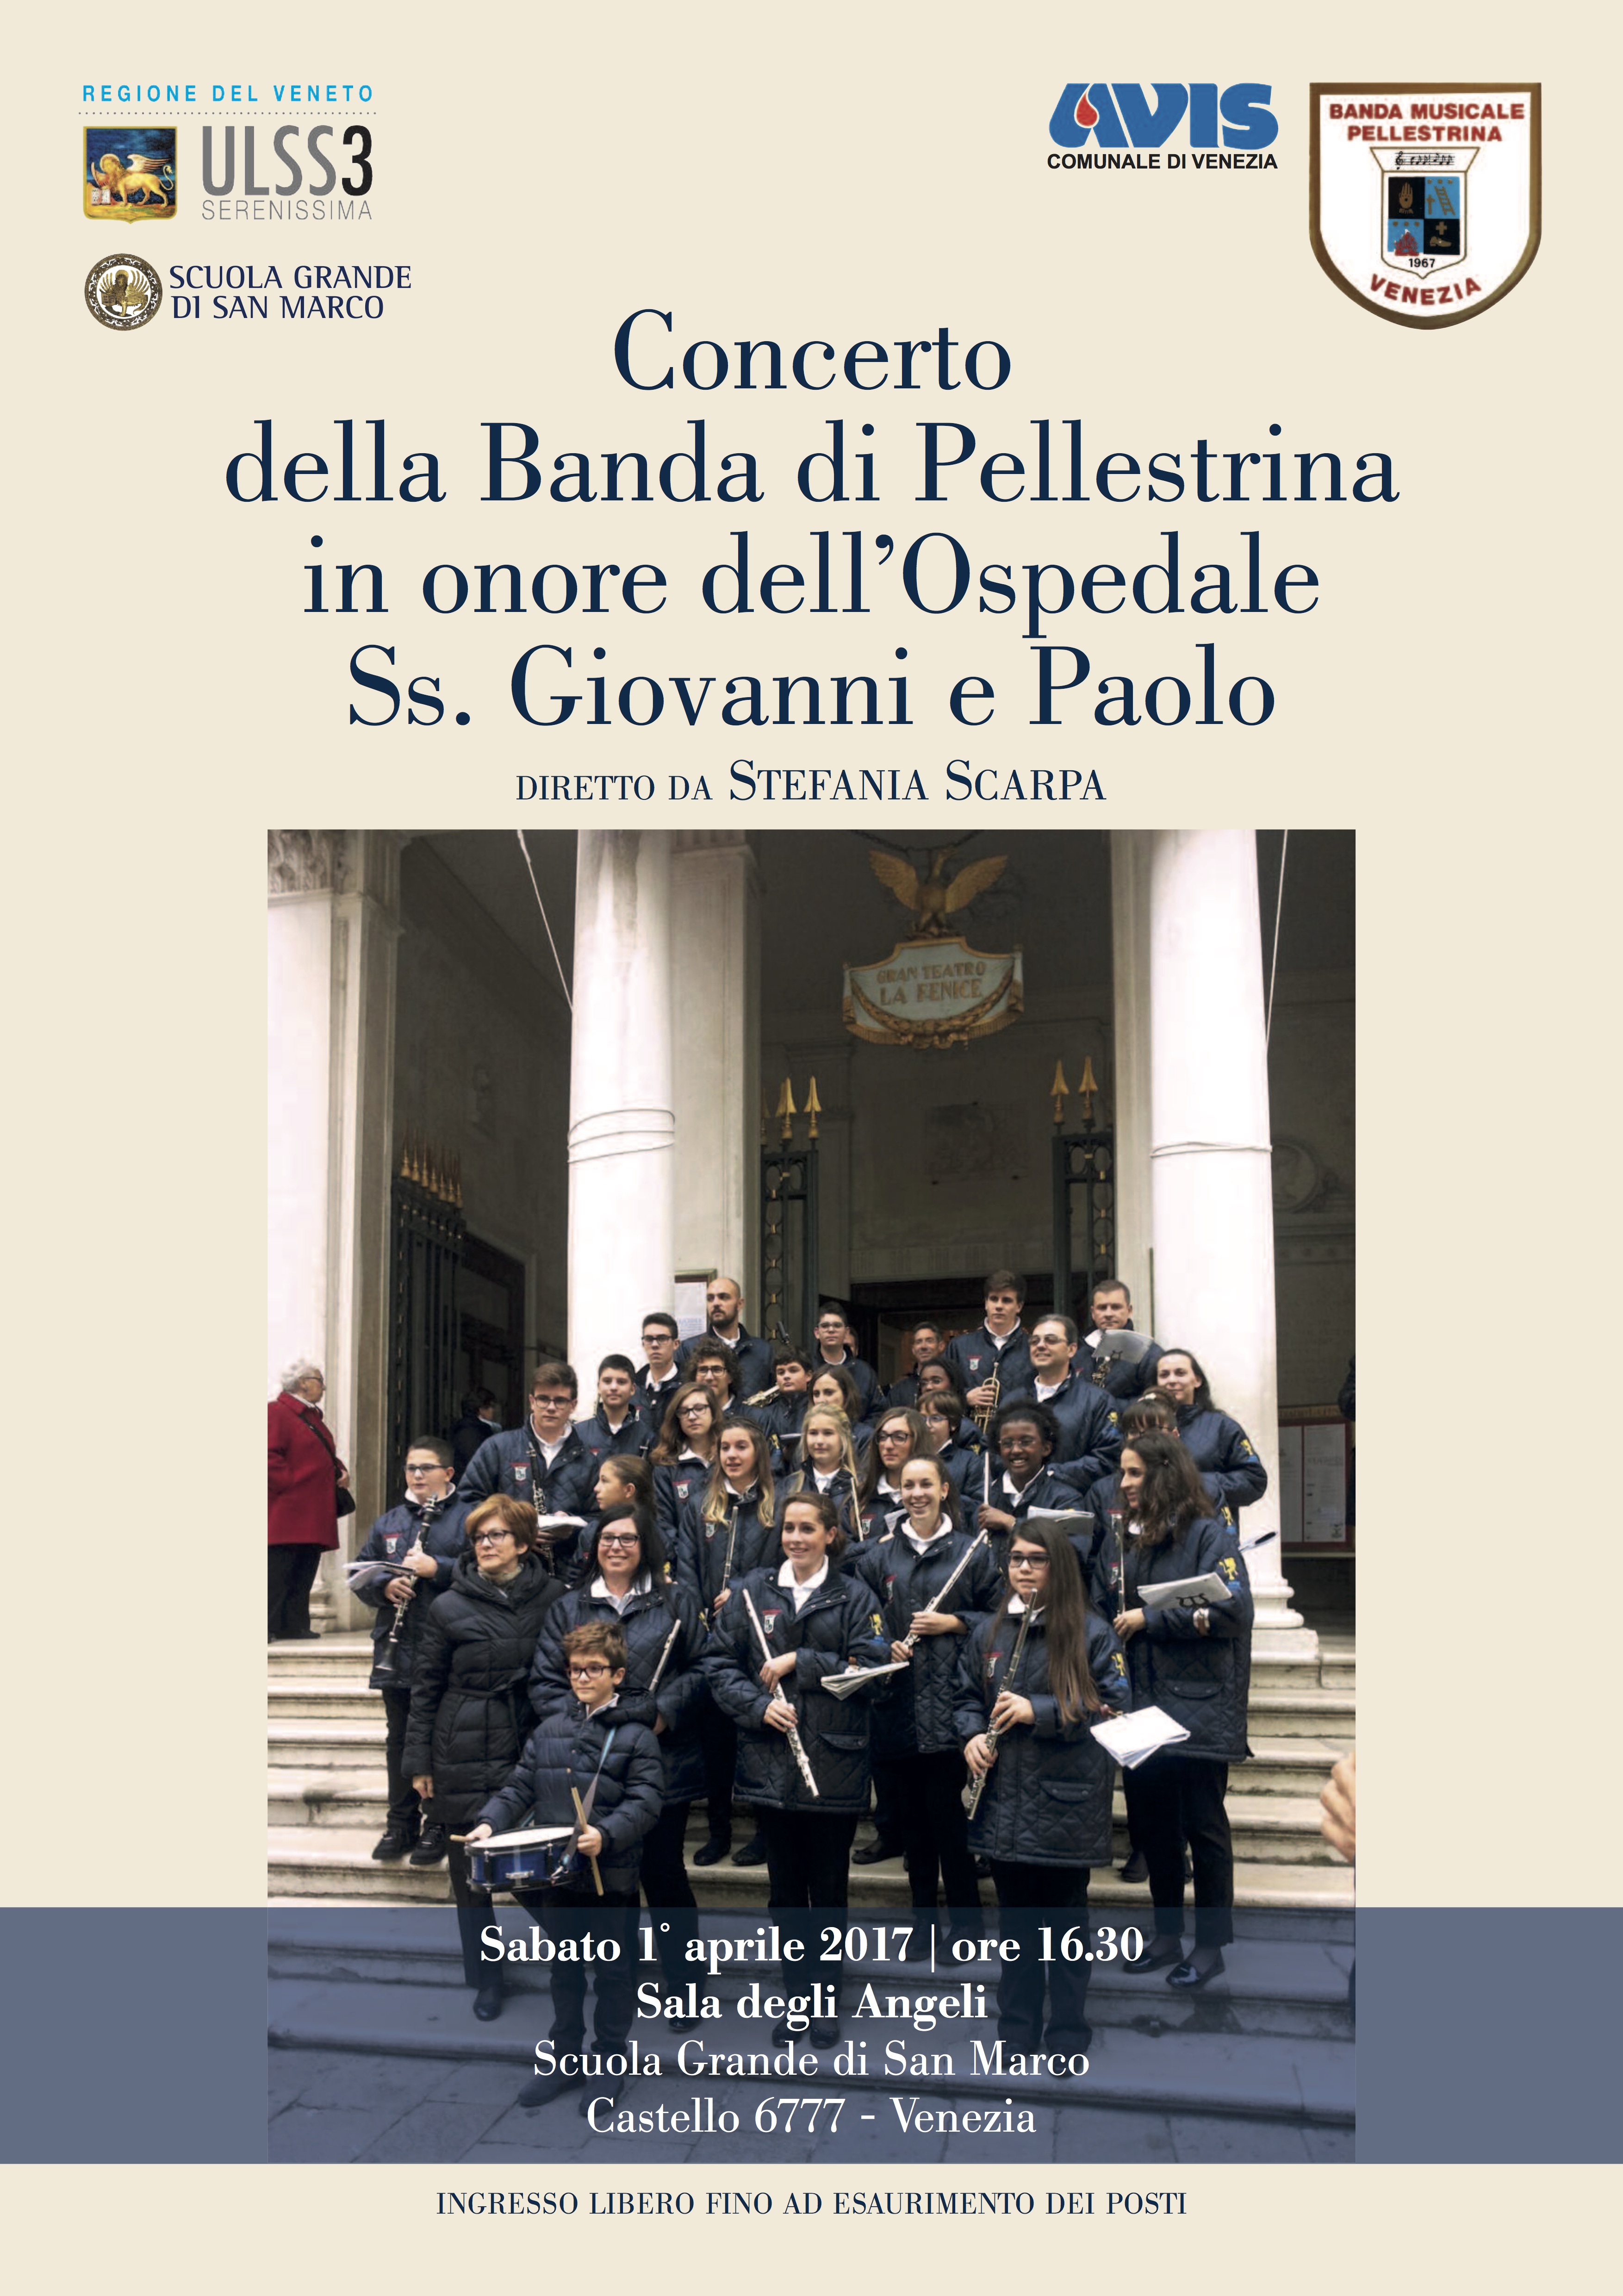 Concerto della Banda di Pellestrina in onore dell’Ospedale SS. Giovanni e Paolo